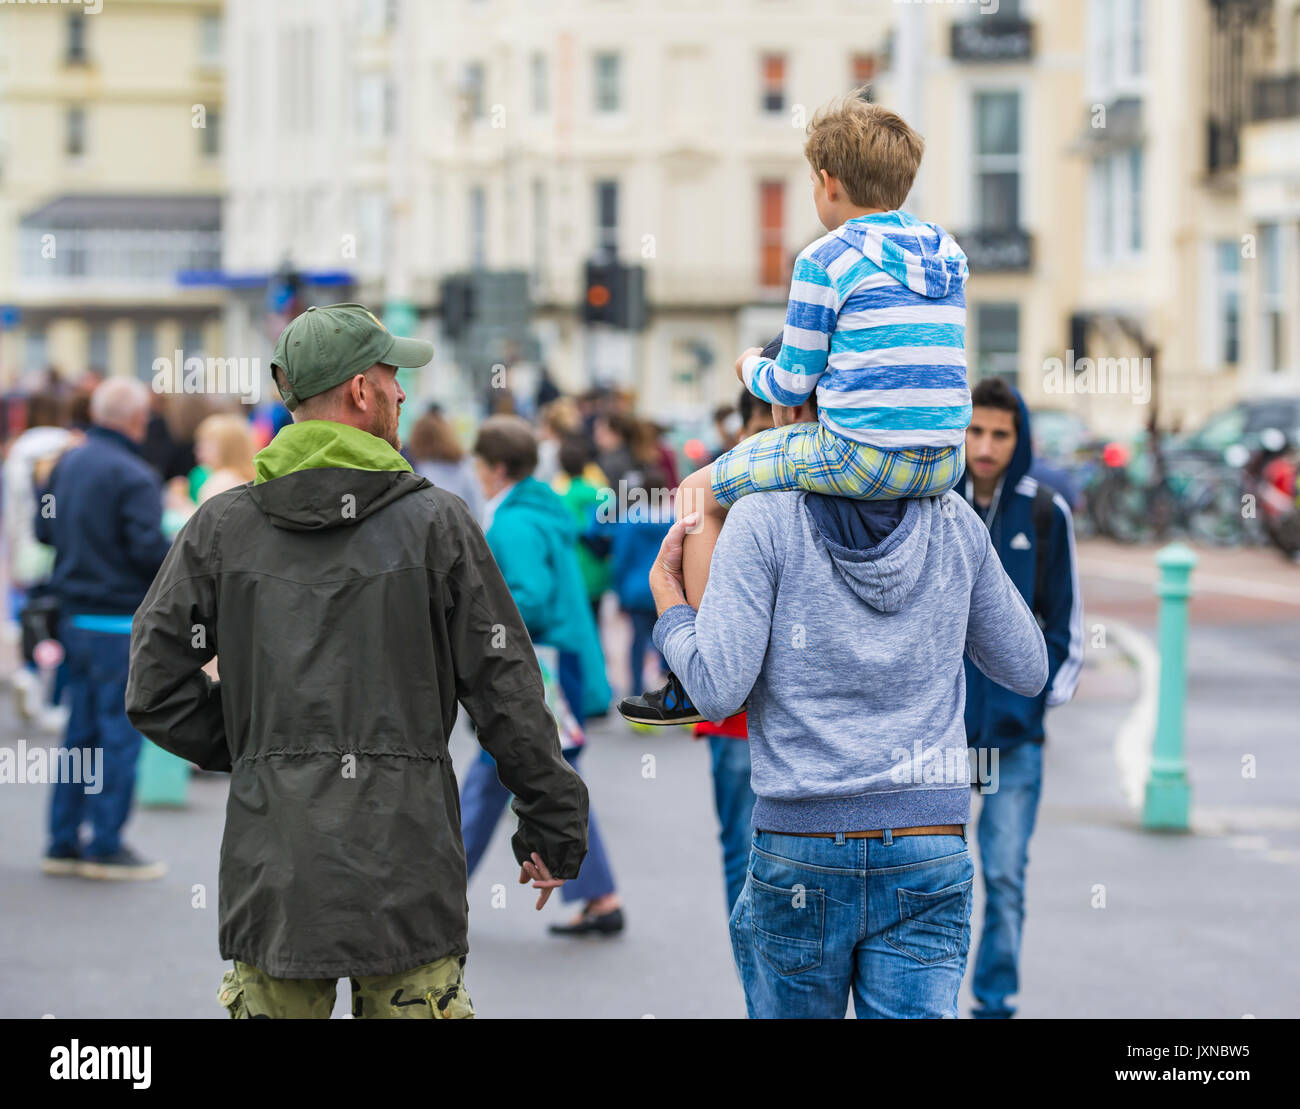 Hombre en una ajetreada ciudad llevando un niño sobre sus hombros. Foto de stock